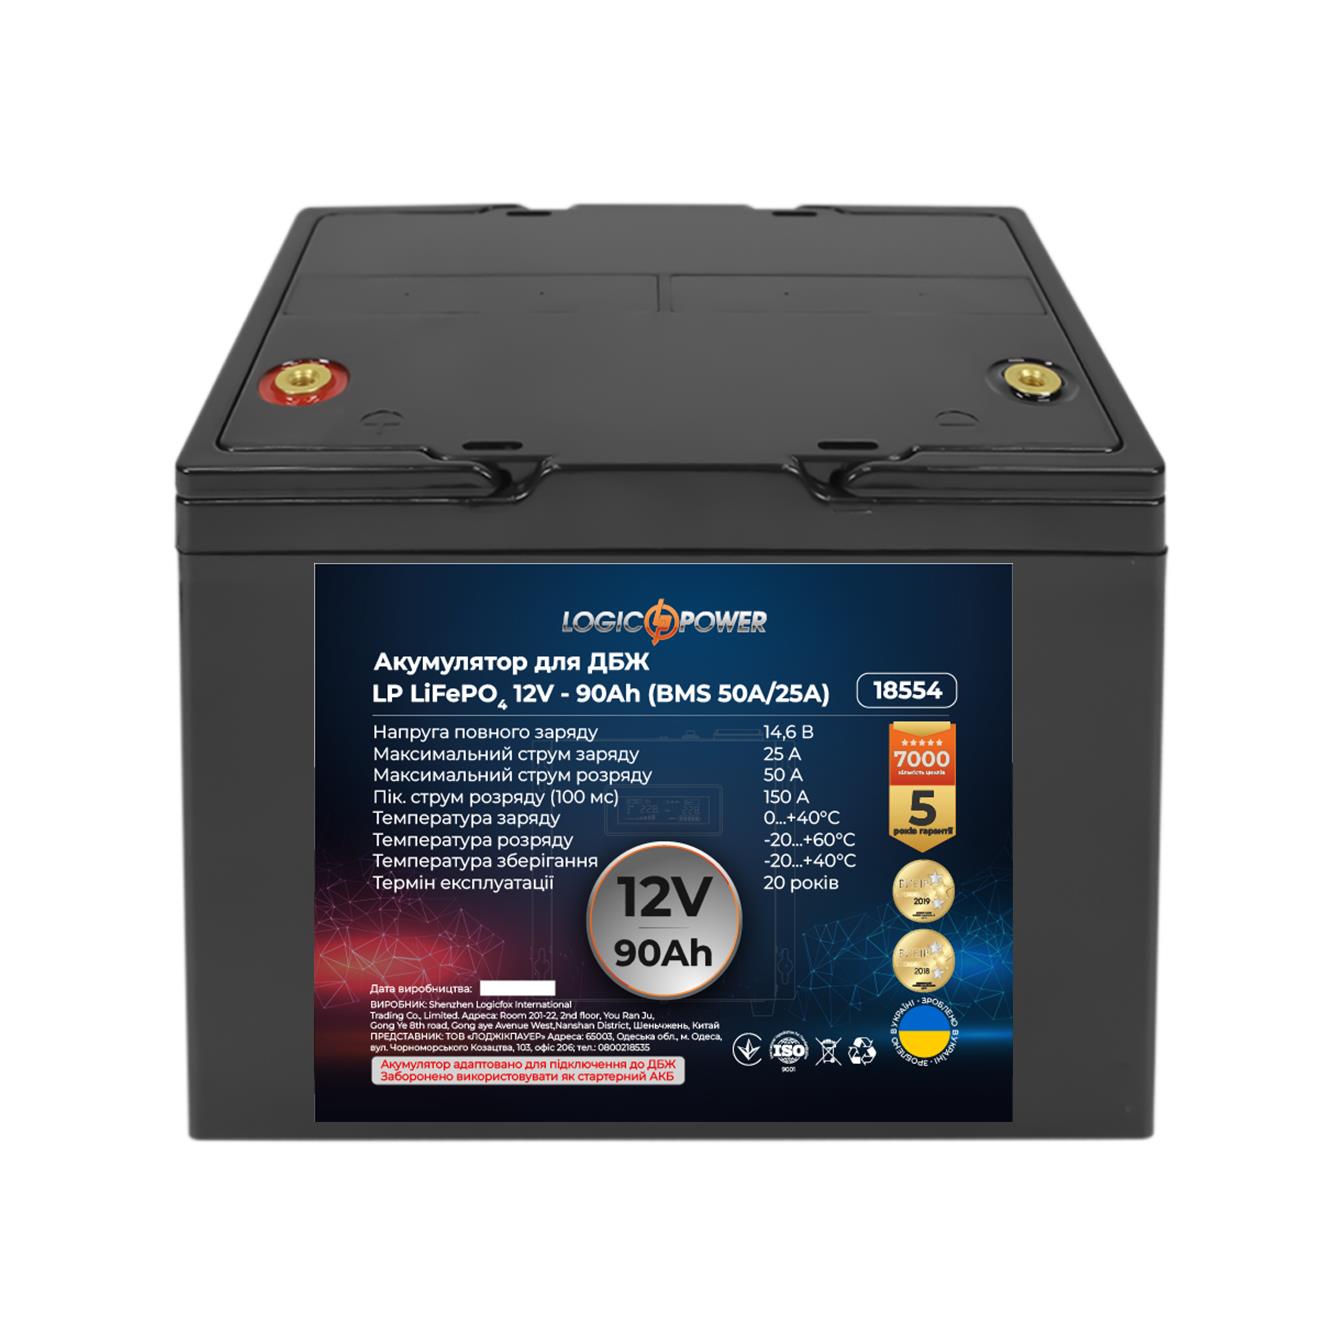 Купить аккумулятор литий-железо-фосфатный LogicPower LP LiFePO4 12V - 90 Ah (BMS 50A/25A) пластик (18554) в Полтаве